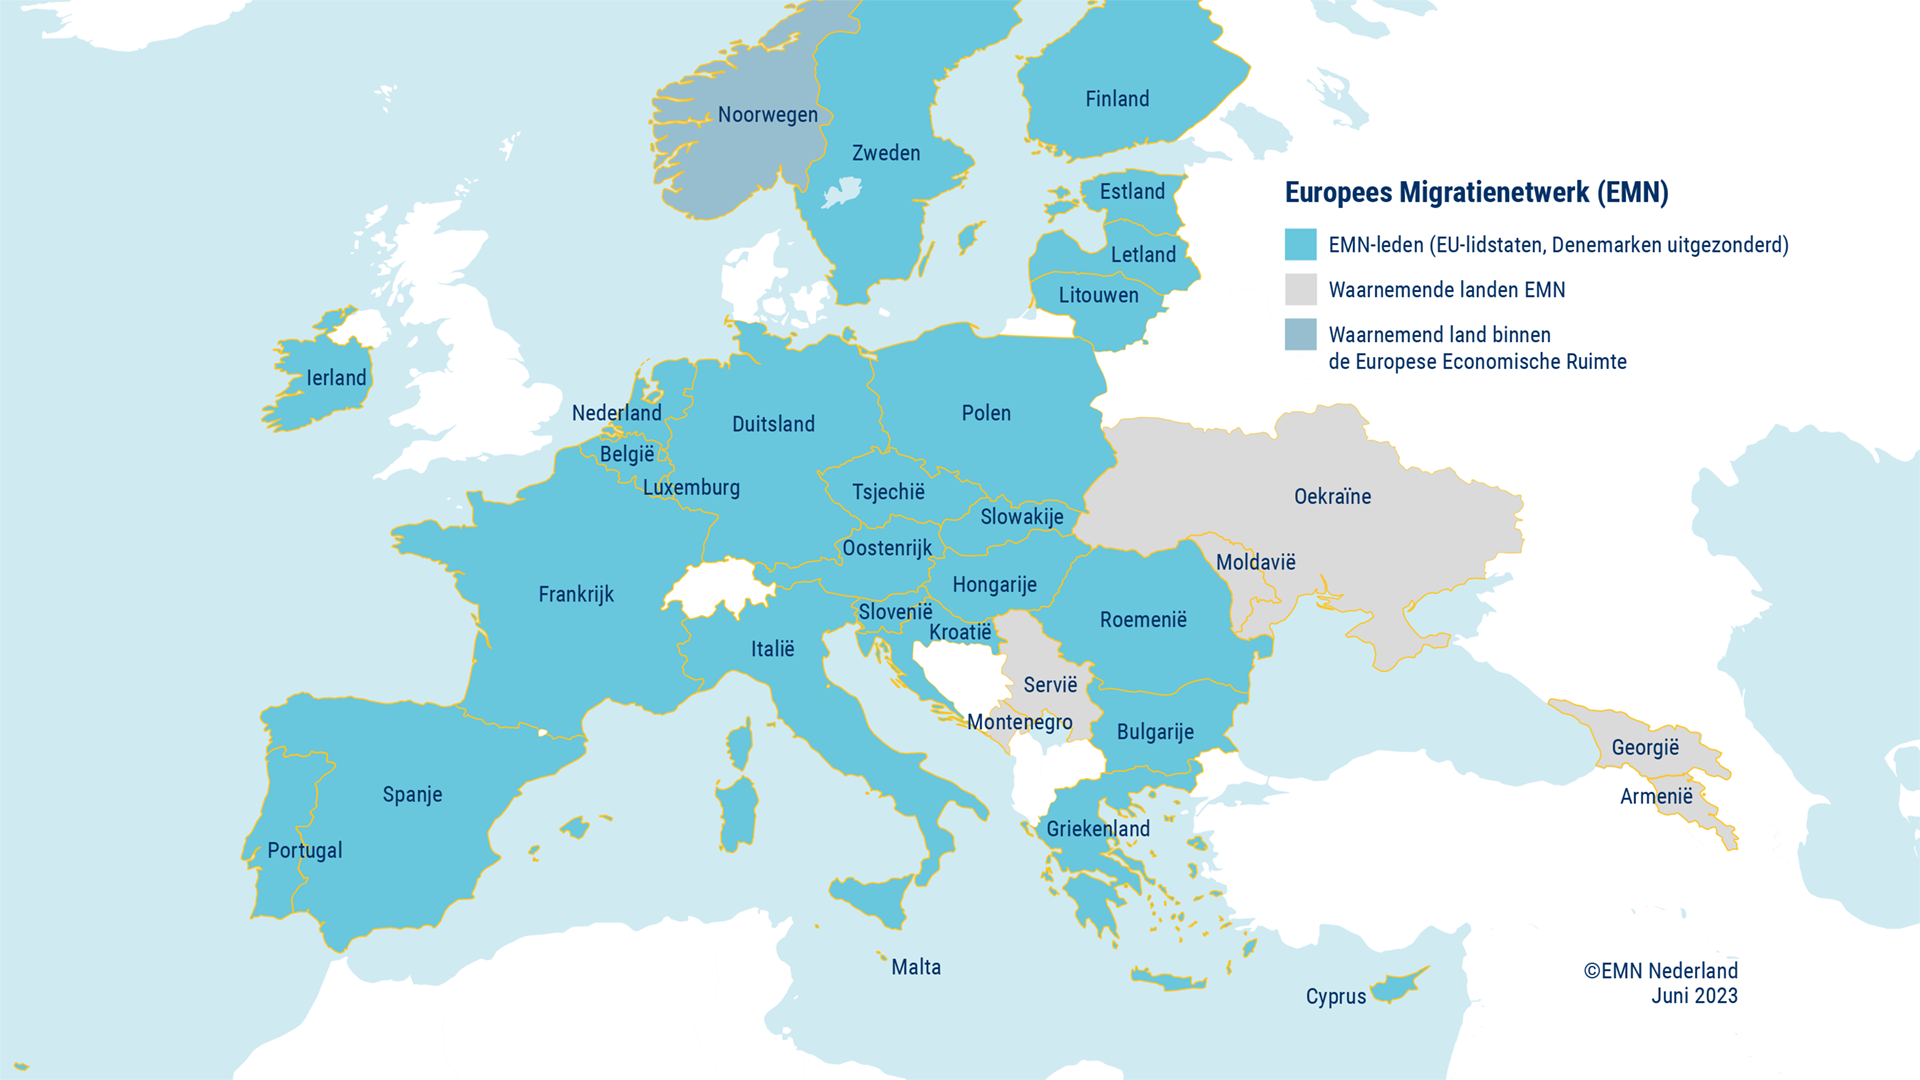 Kaartje Europa EMN-leden